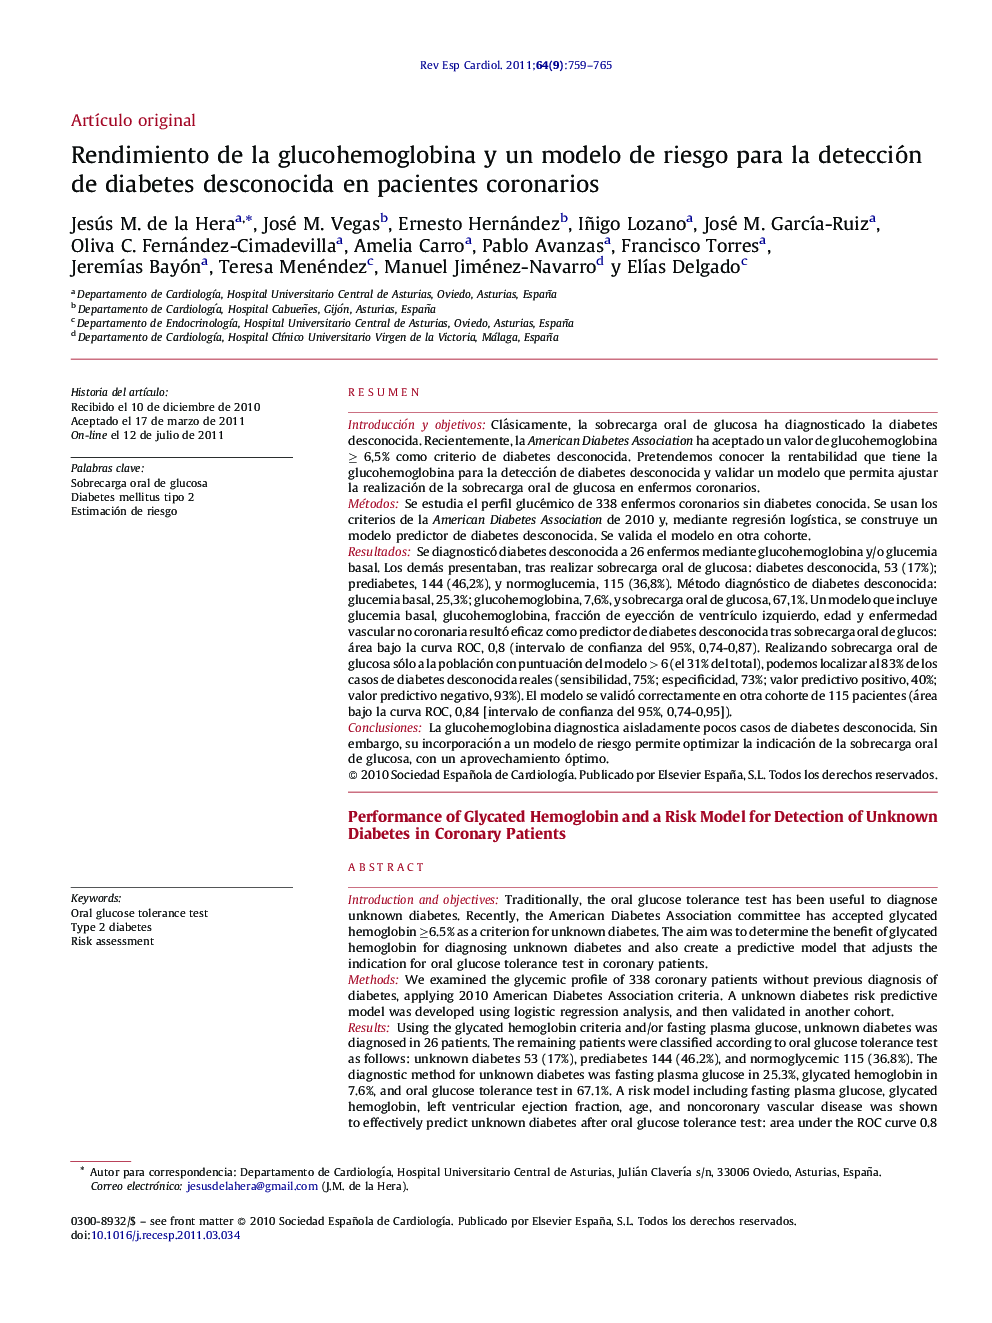 Rendimiento de la glucohemoglobina y un modelo de riesgo para la detección de diabetes desconocida en pacientes coronarios